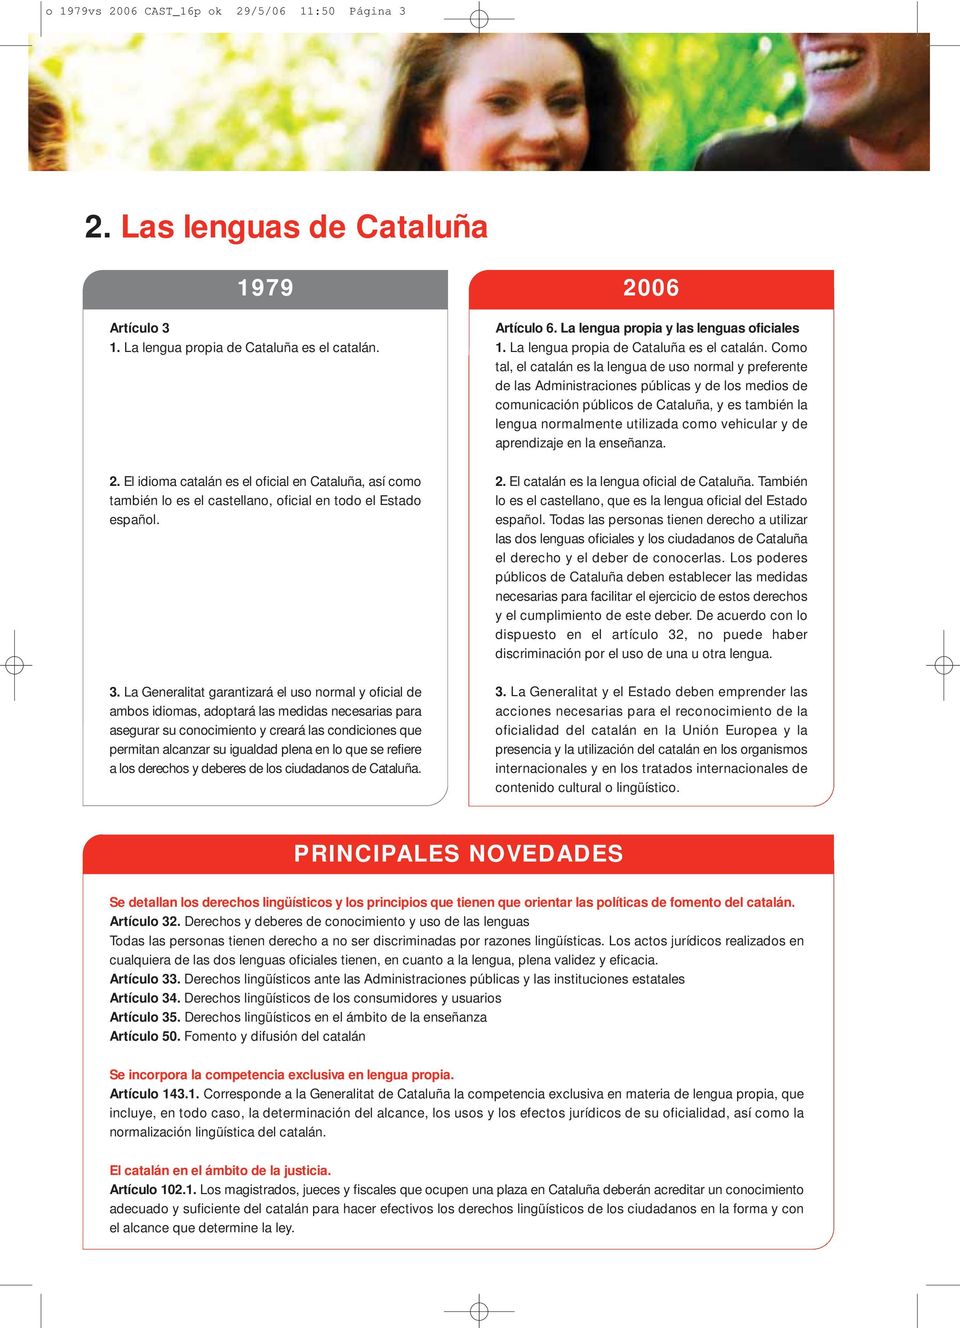 en lo que se refiere a los derechos y deberes de los ciudadanos de Cataluña. 2006 Artículo 6. La lengua propia y las lenguas oficiales 1. La lengua propia de Cataluña es el catalán.